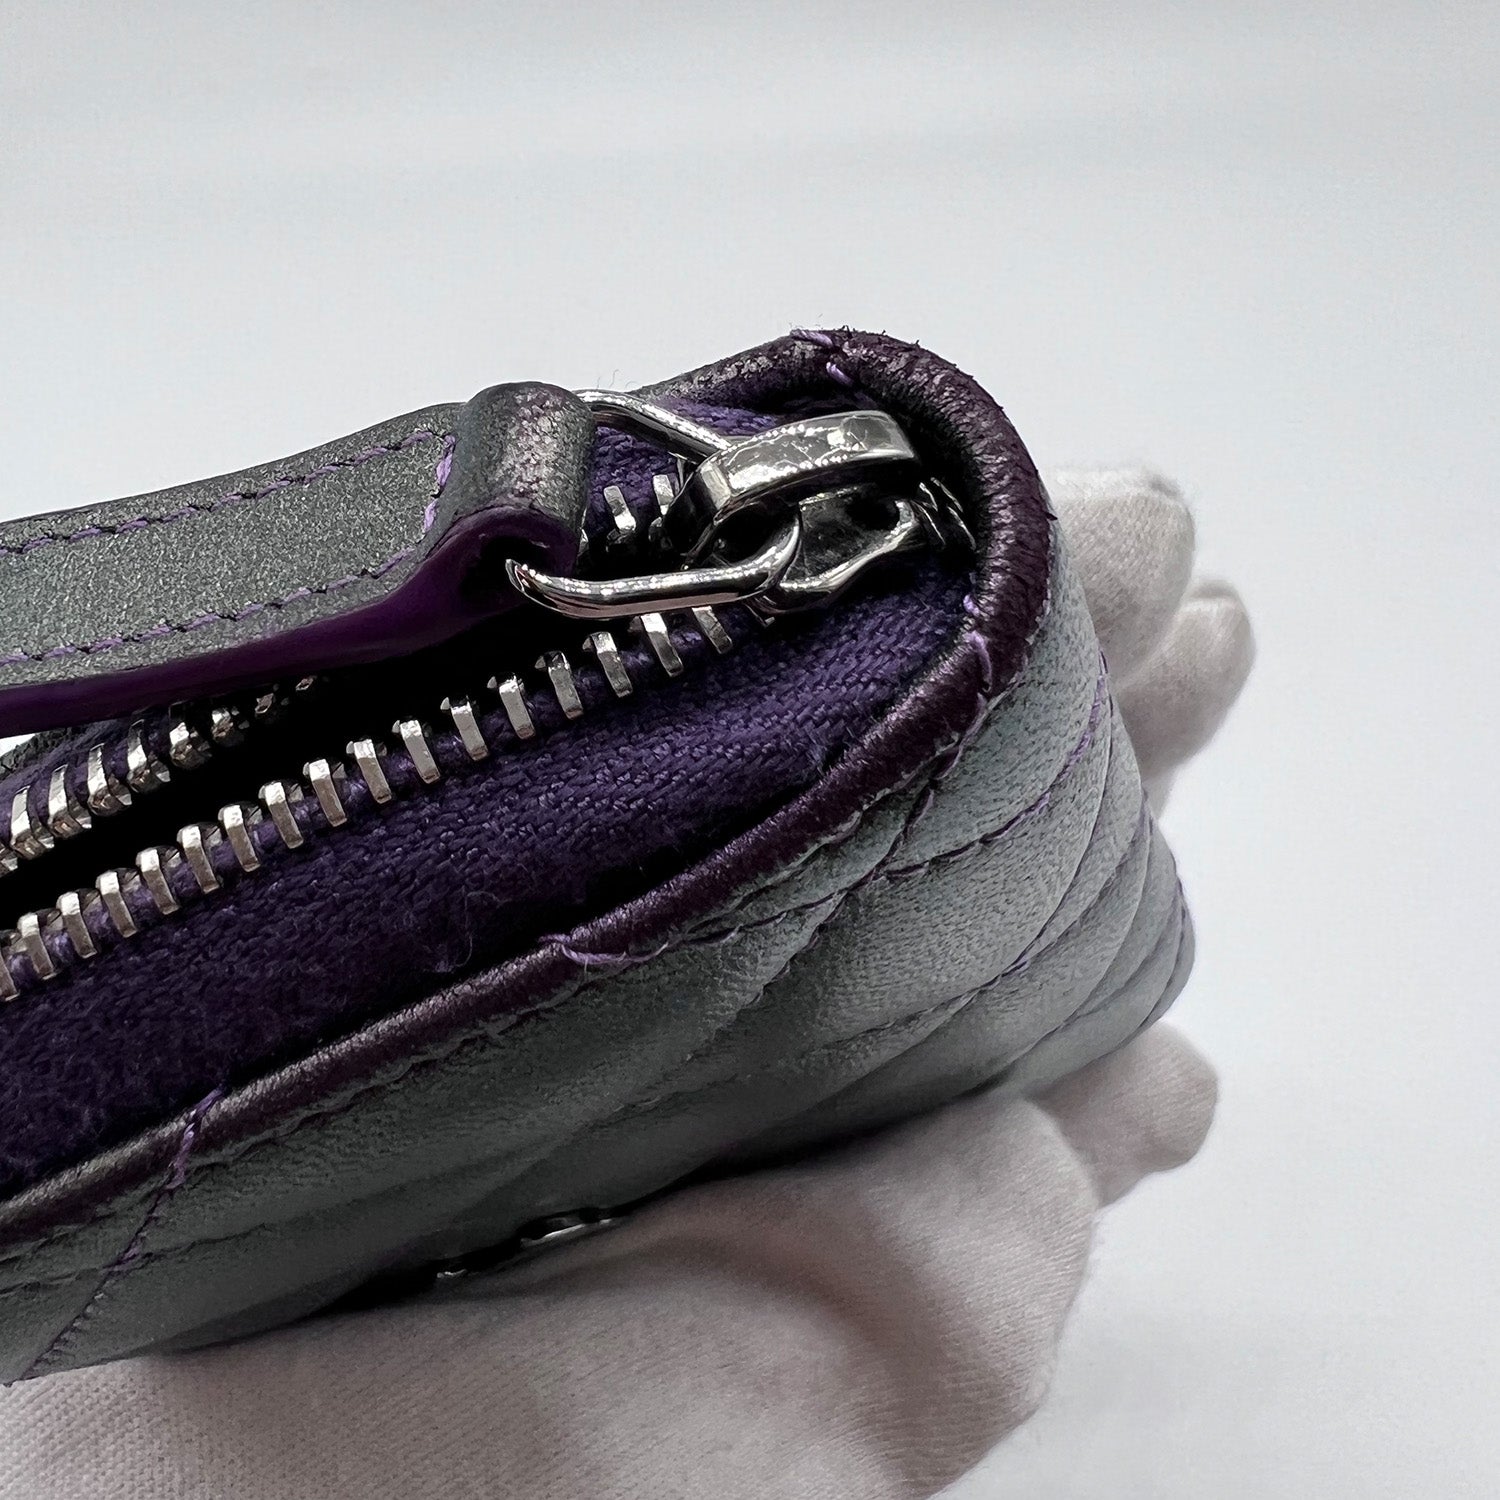 Chanel Heart Shape Zip Arm Coin Purse Lambskin Purple, Purple, One Size